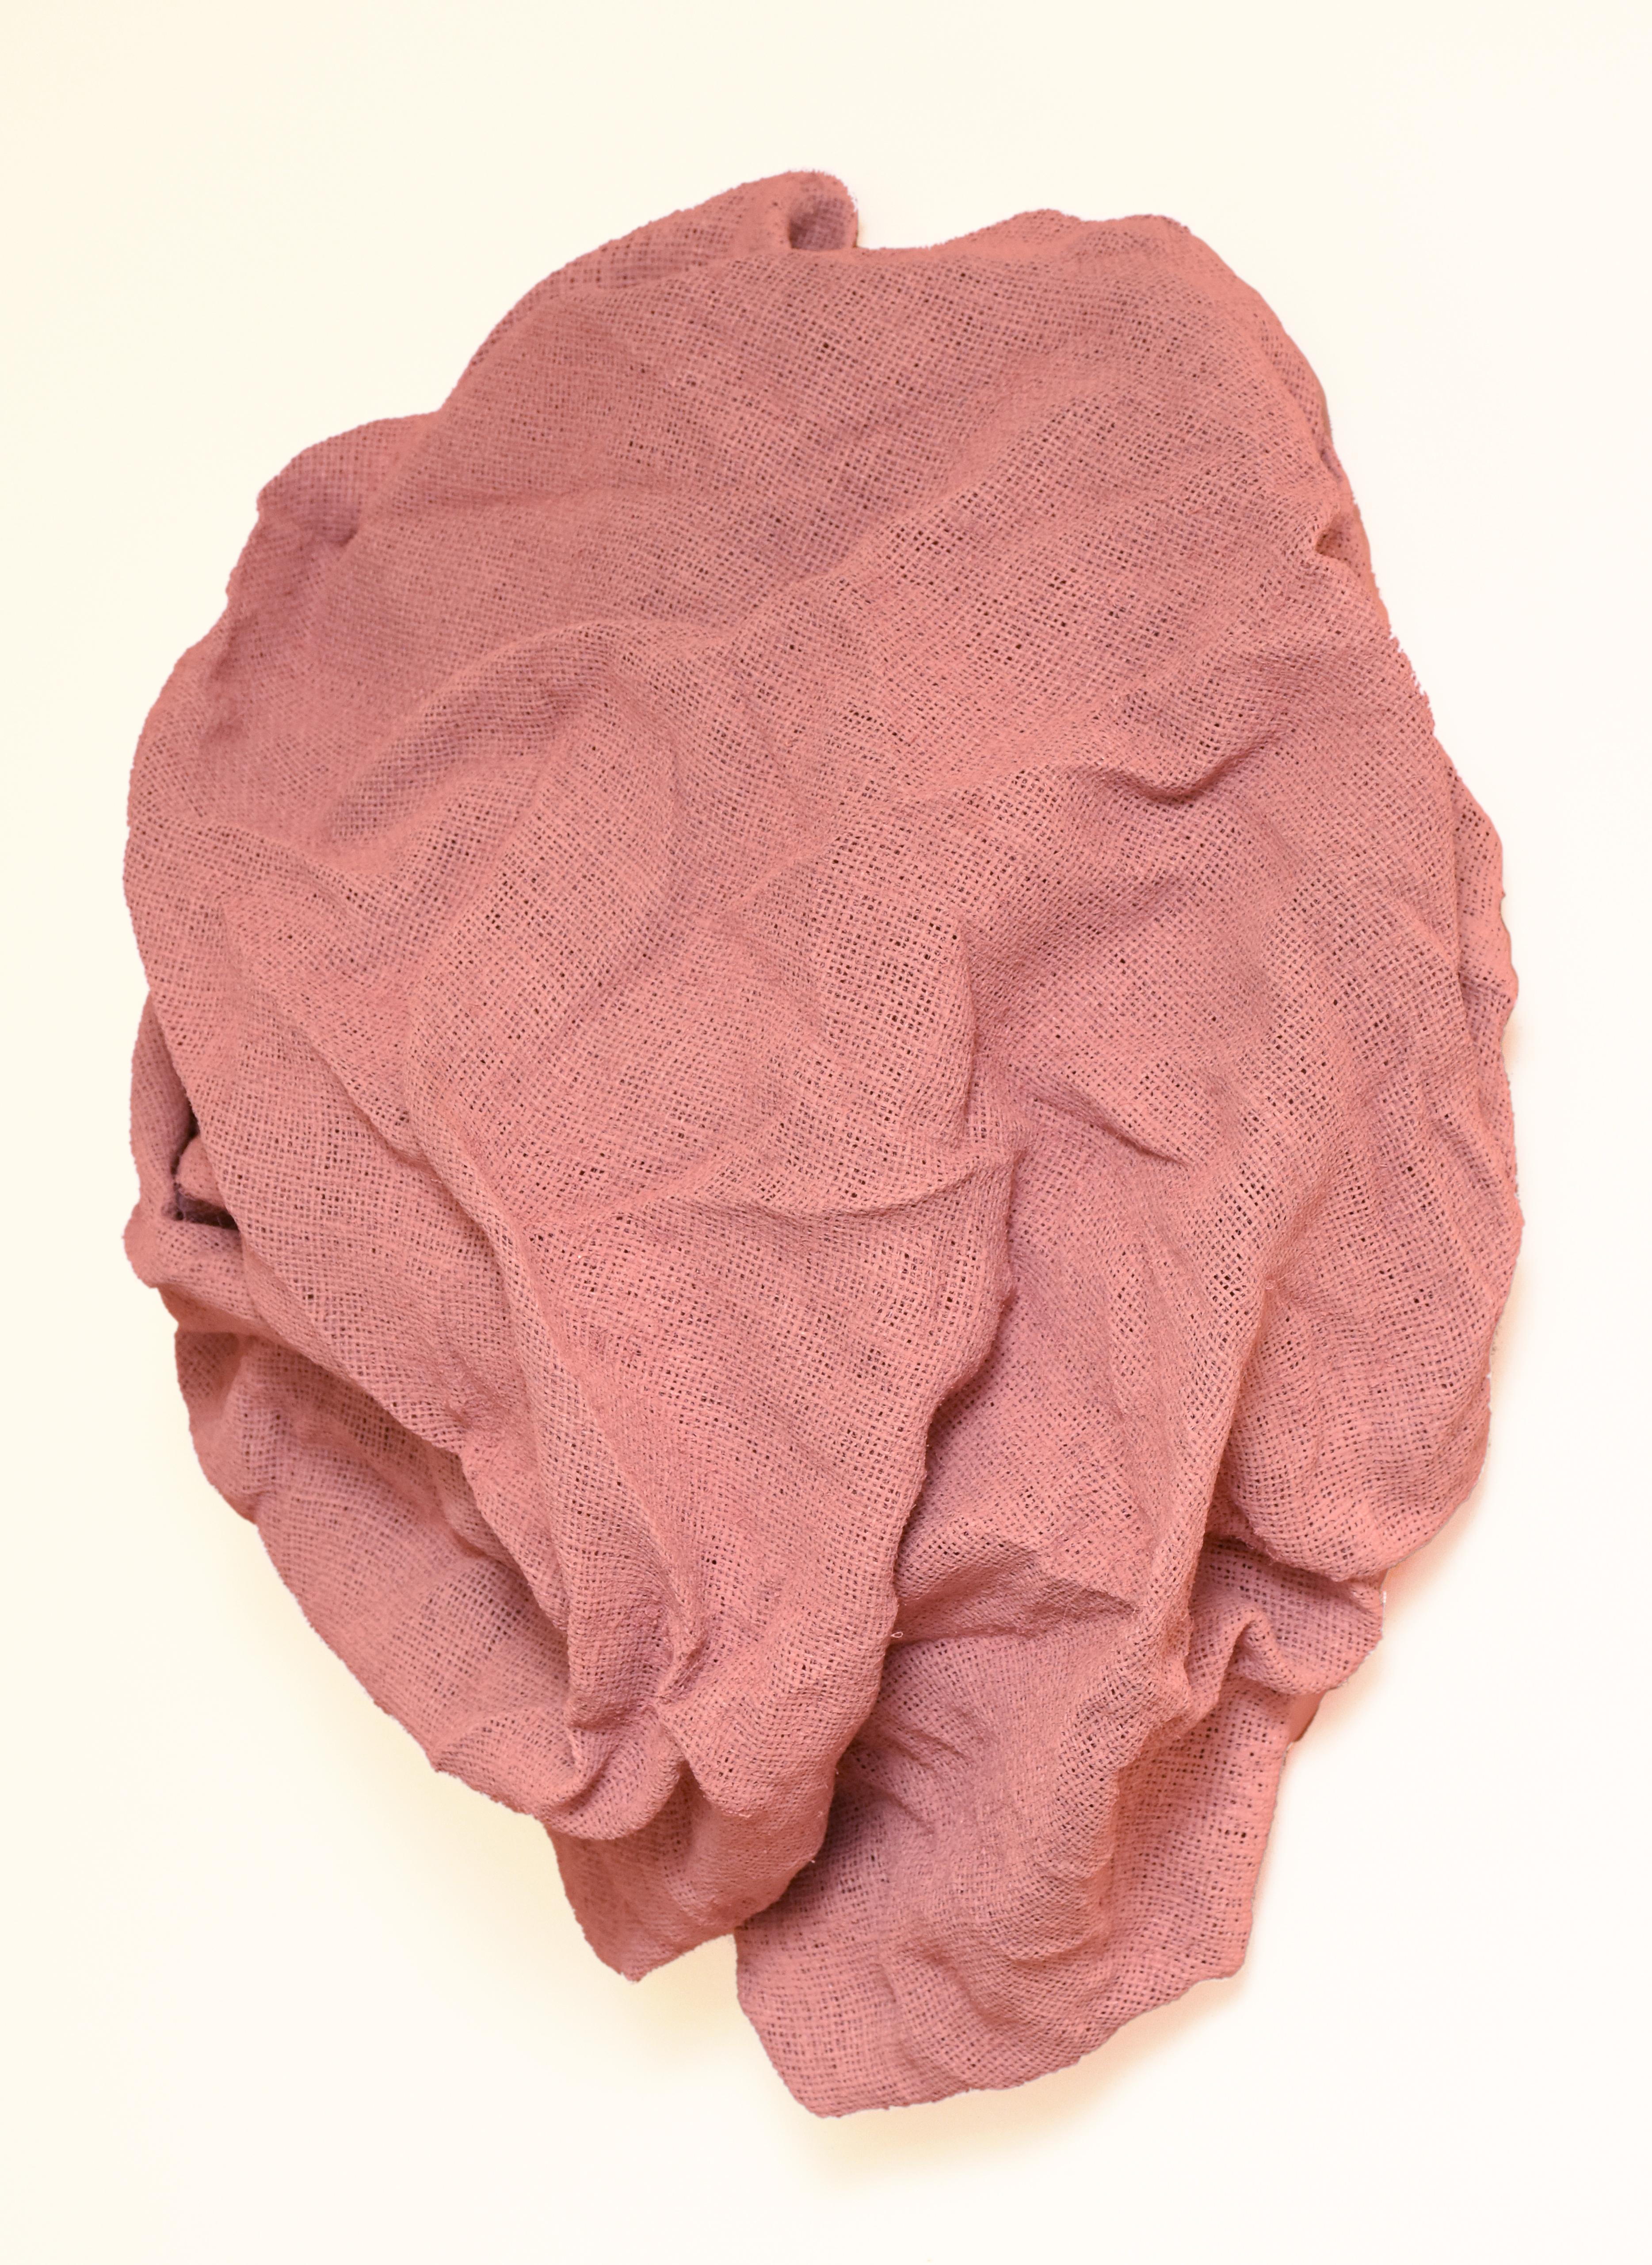 Ballet Pink Folds (hard fabric, textile wall sculpture, contemporary art design) - Sculpture by Chloe Hedden